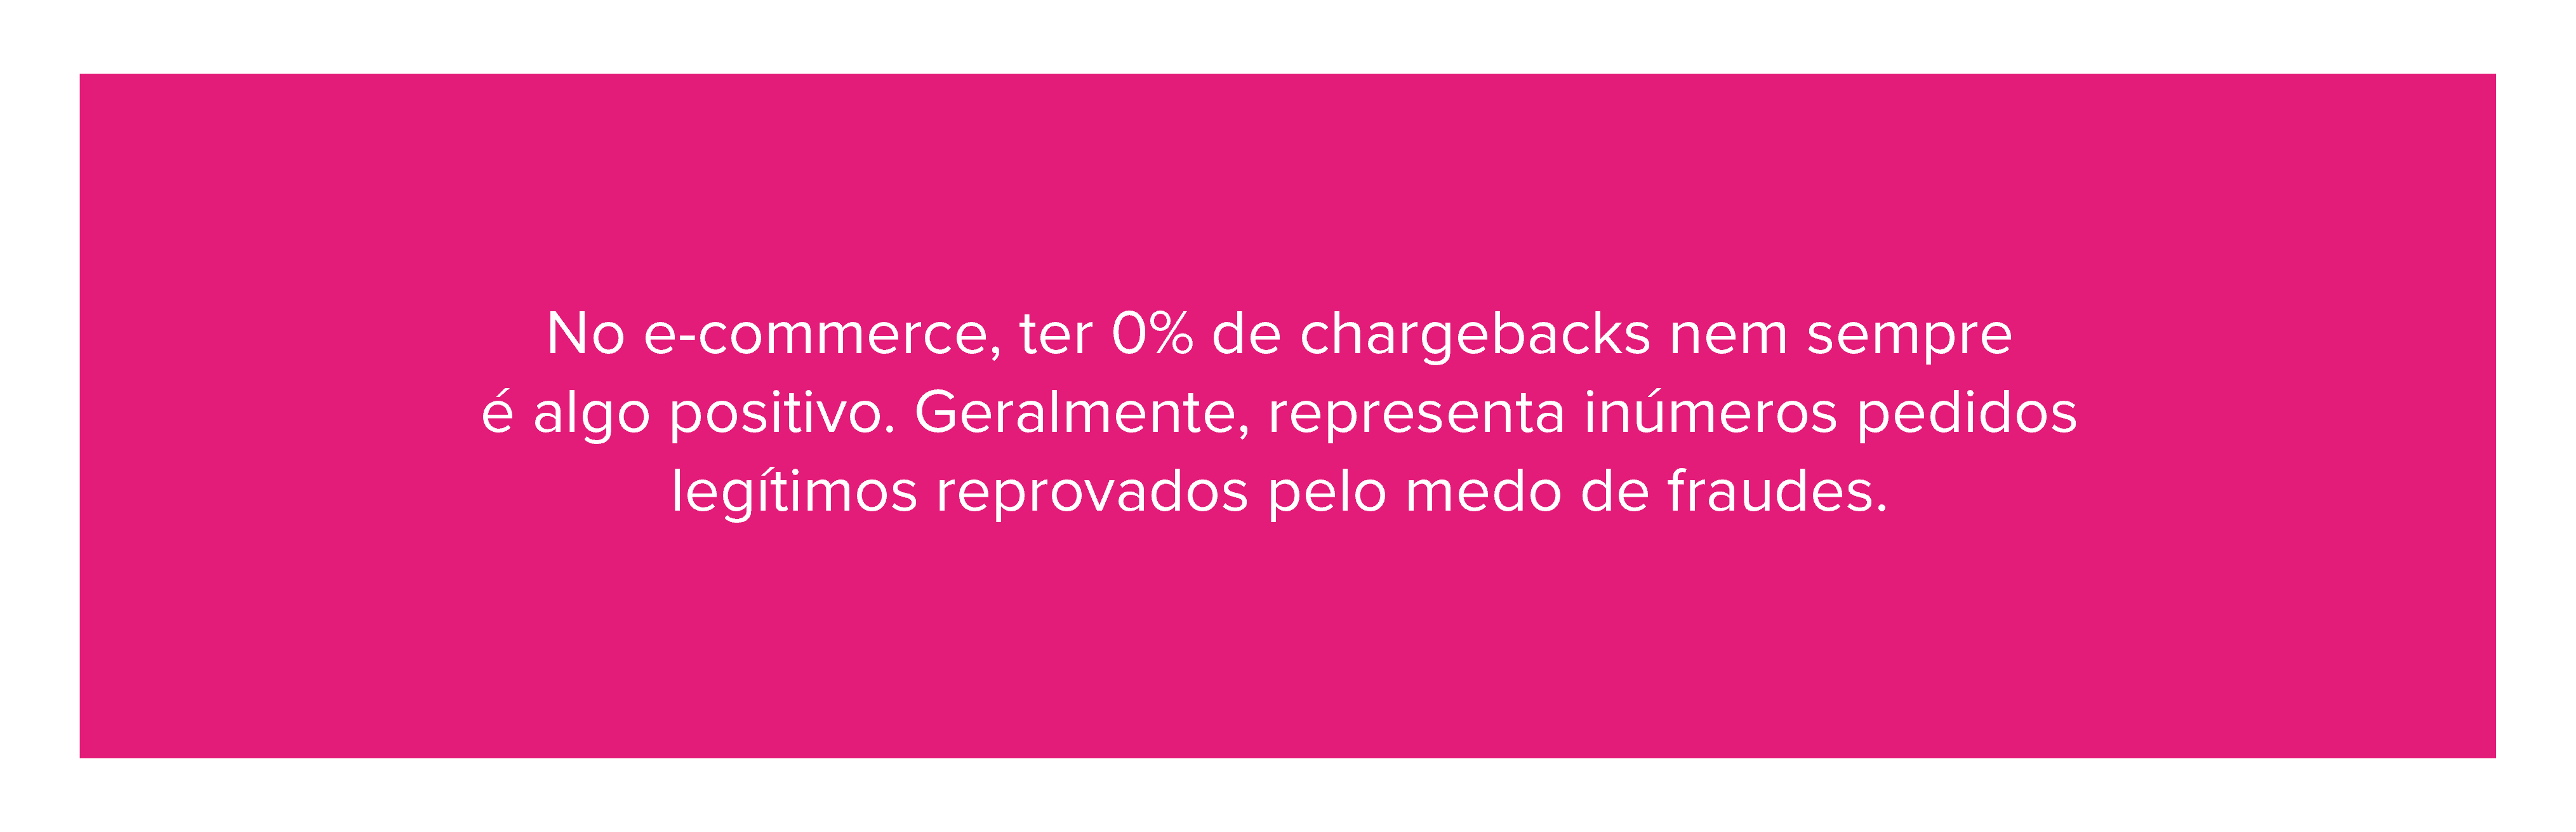 No e-commerce, ter 0% de chargebacks nem sempre é algo positivo. Geralmente, representa inúmeros pedidos legítimos reprovados pelo medo de fraudes